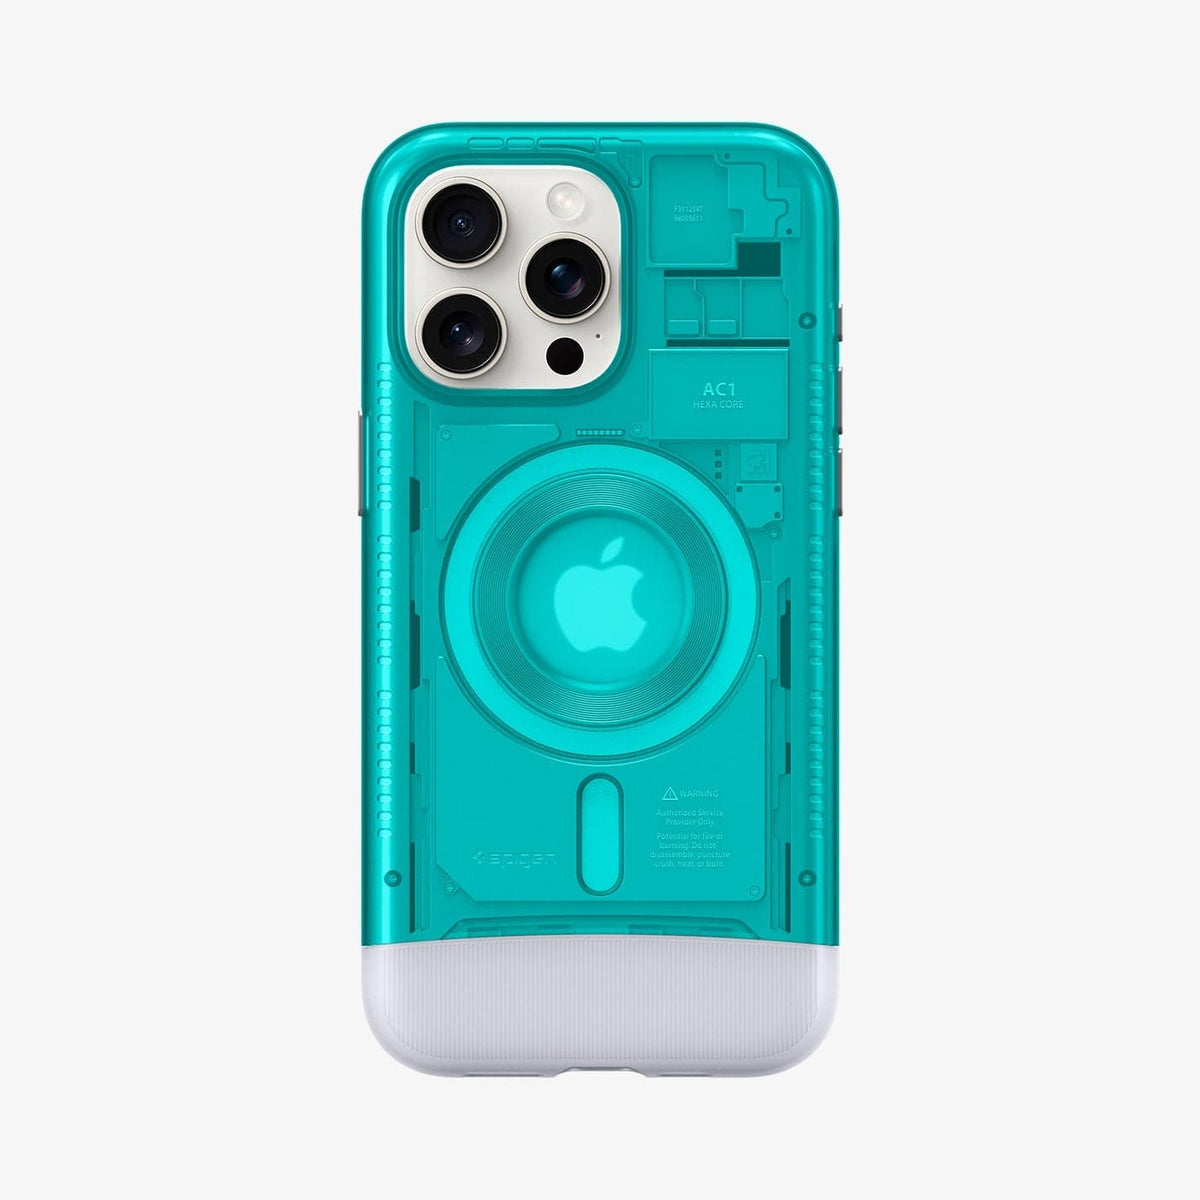 CLASSIC iPhone case